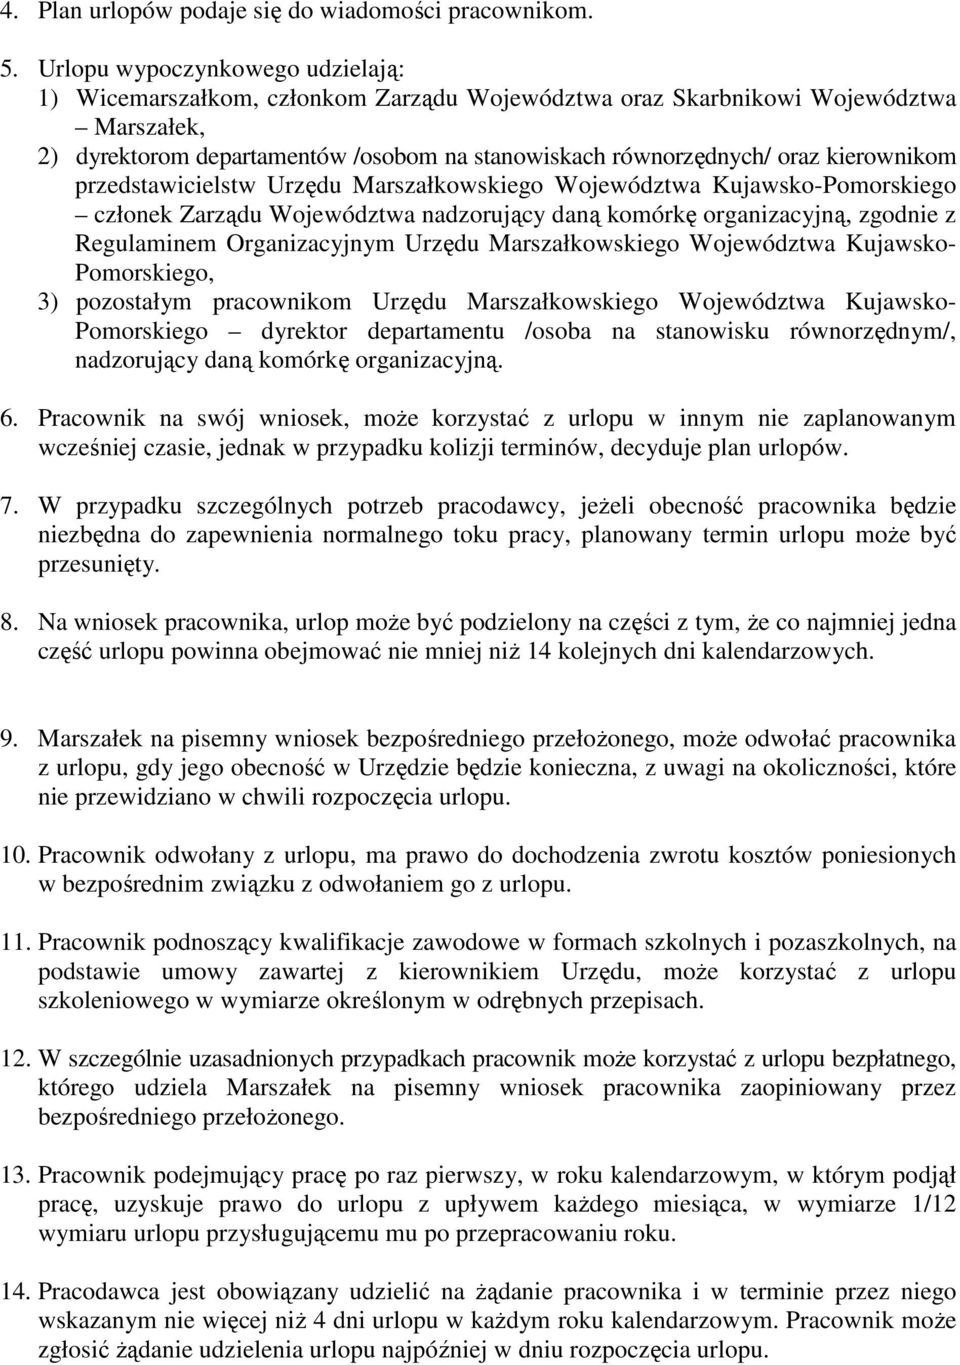 Regulamin Pracy Urzędu Marszałkowskiego Województwa Kujawsko-Pomorskiego W Toruniu - Pdf Free Download